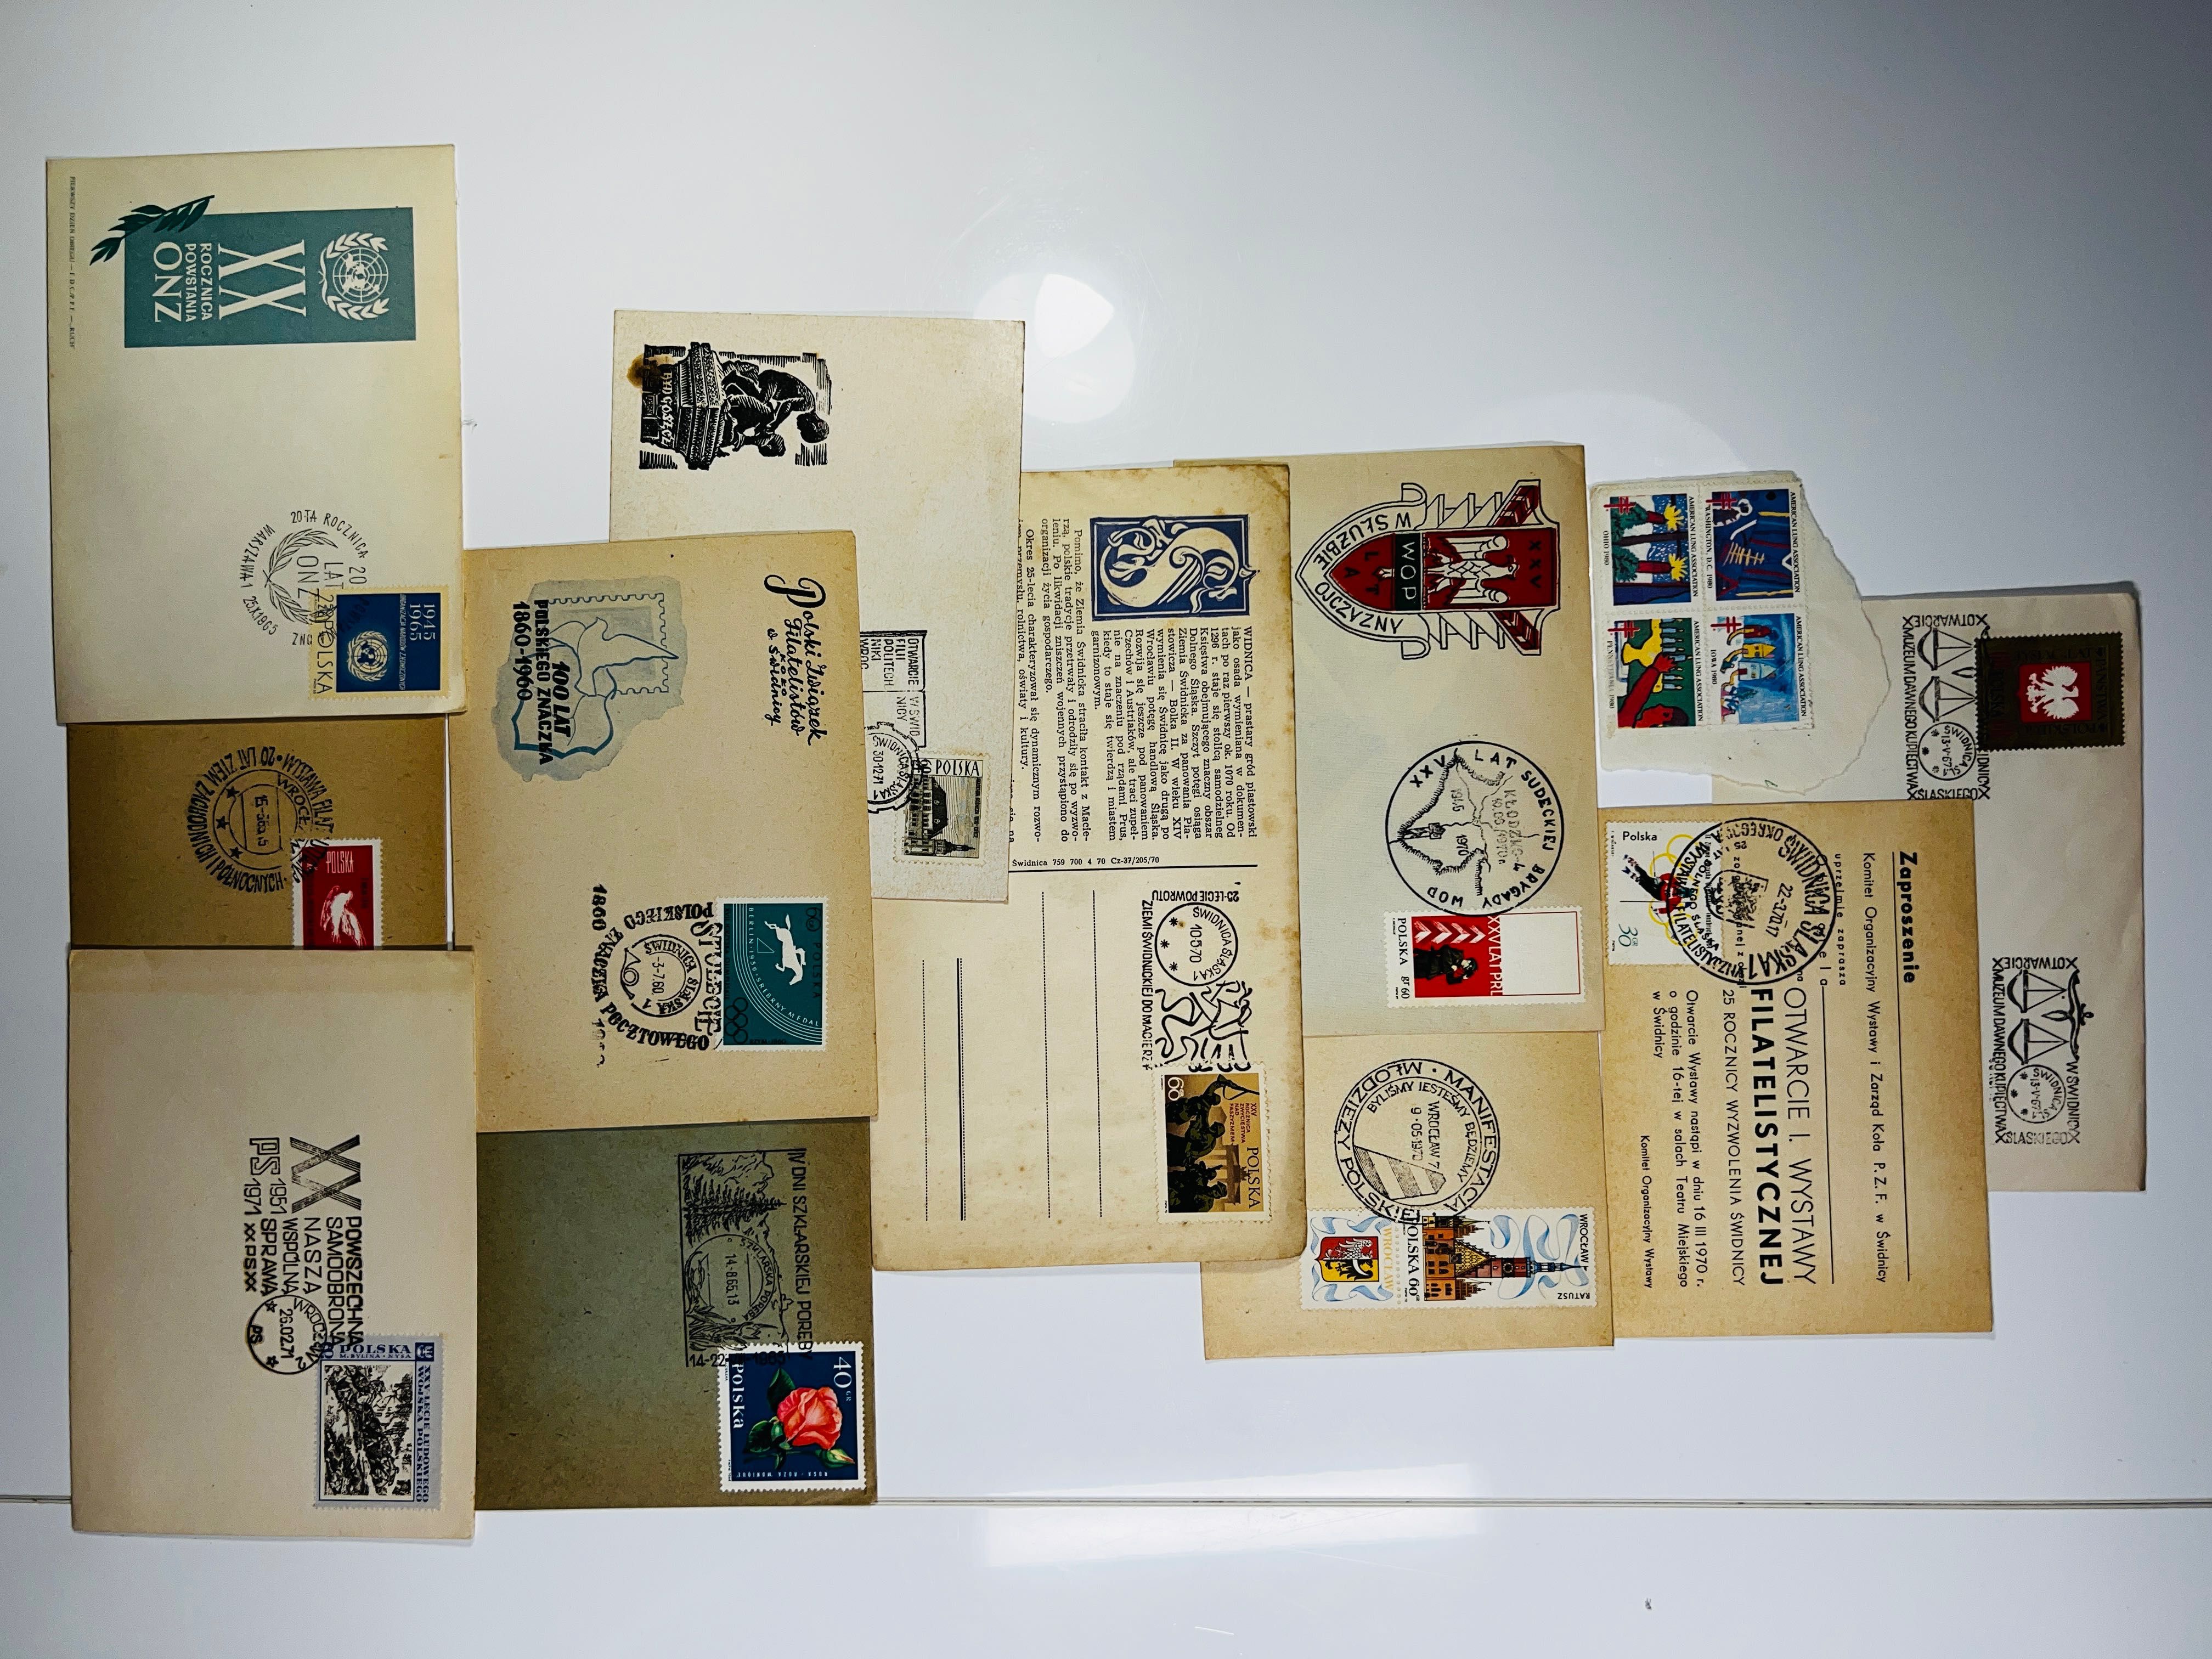 Kolekcja kart pocztowych z lat PRL